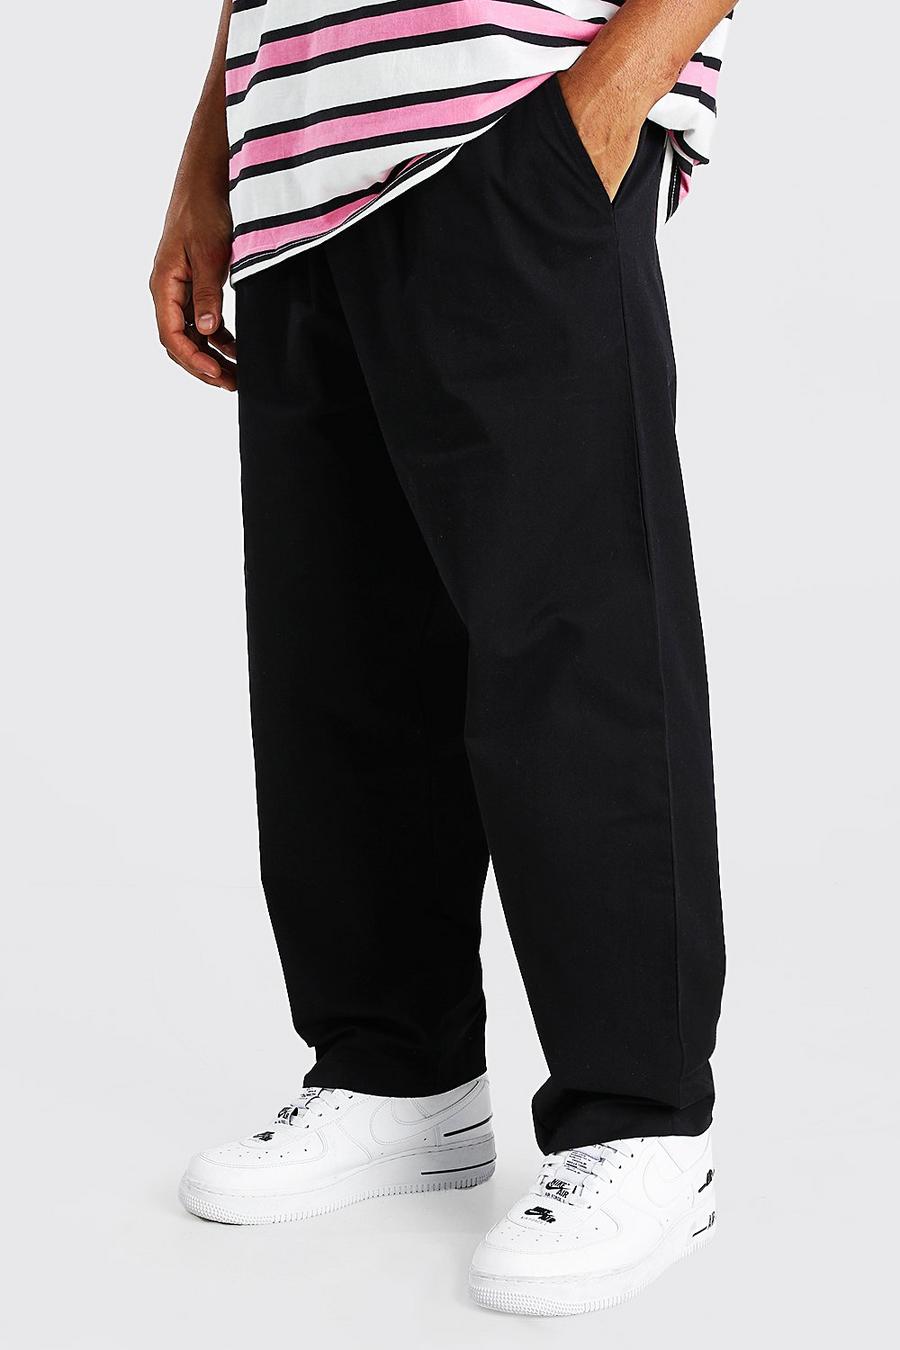 Pantaloni chino a pinocchietto taglio skater con cintura elastica in vita, Nero negro